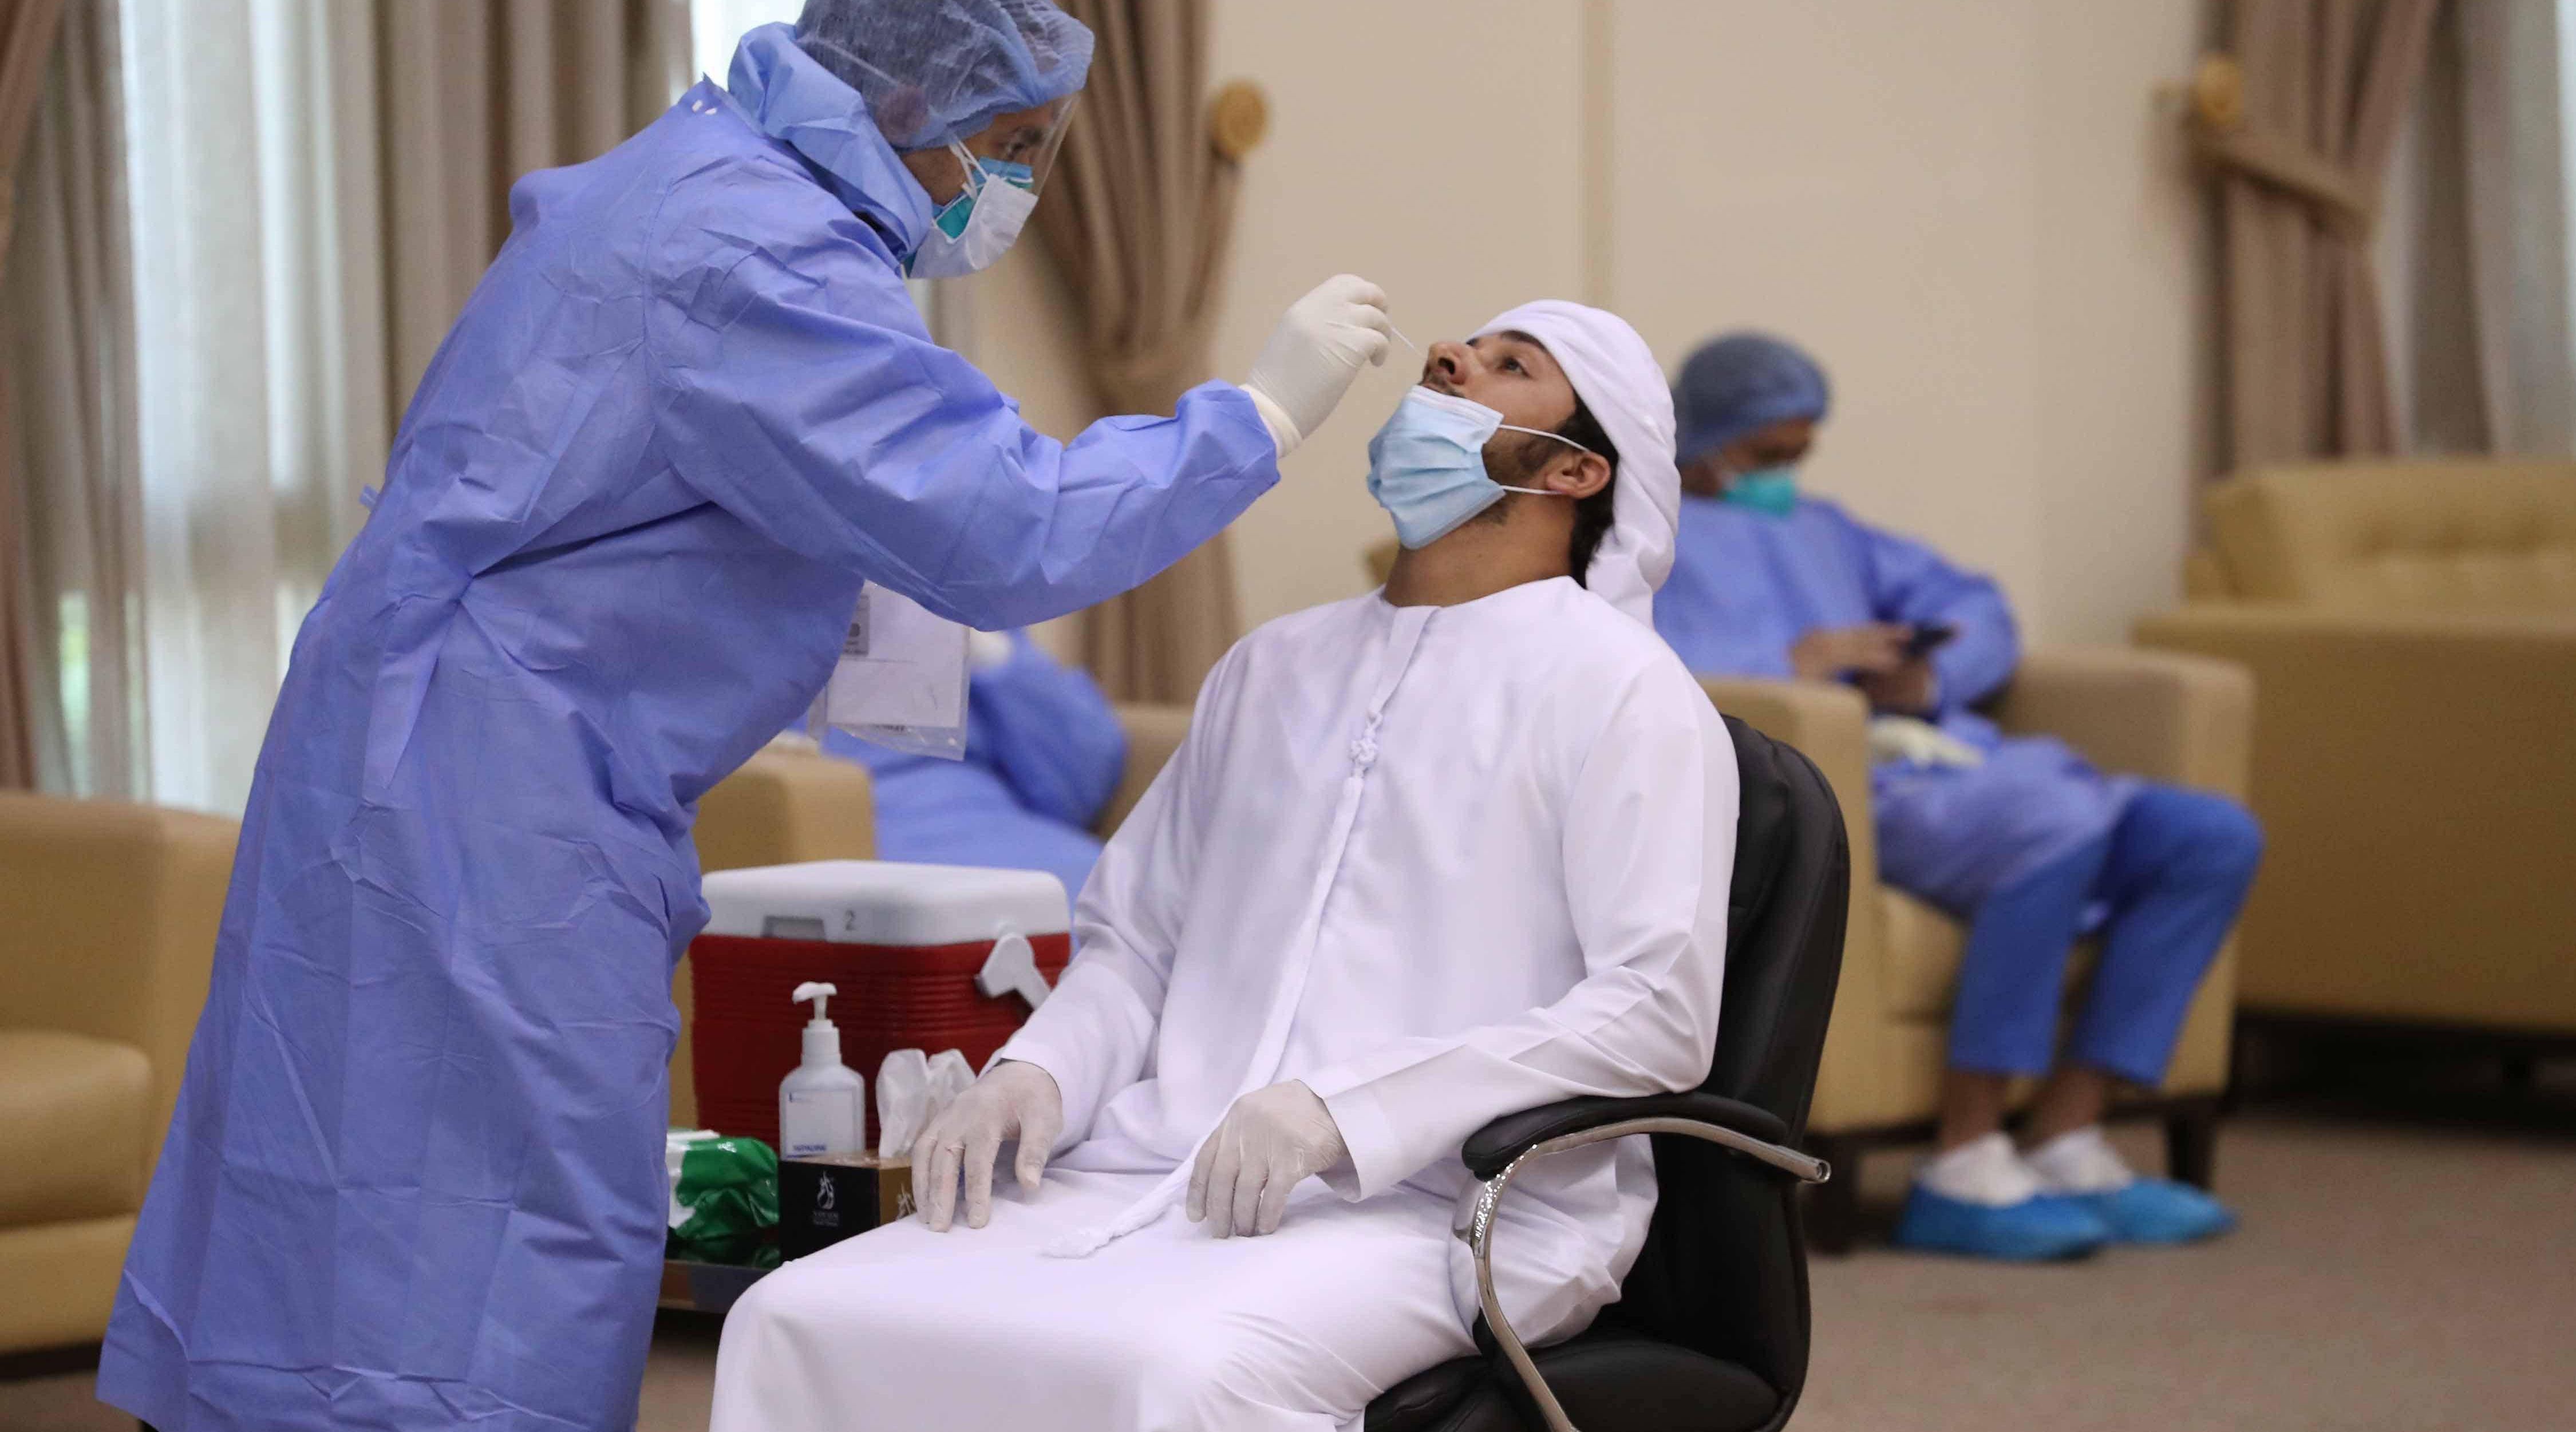 أطباء الإمارات يوضحون الفرق بين فيروس كورونا والأنفلونزا ويؤكدون على ضرورة الاختبار للكشف عن كليهما